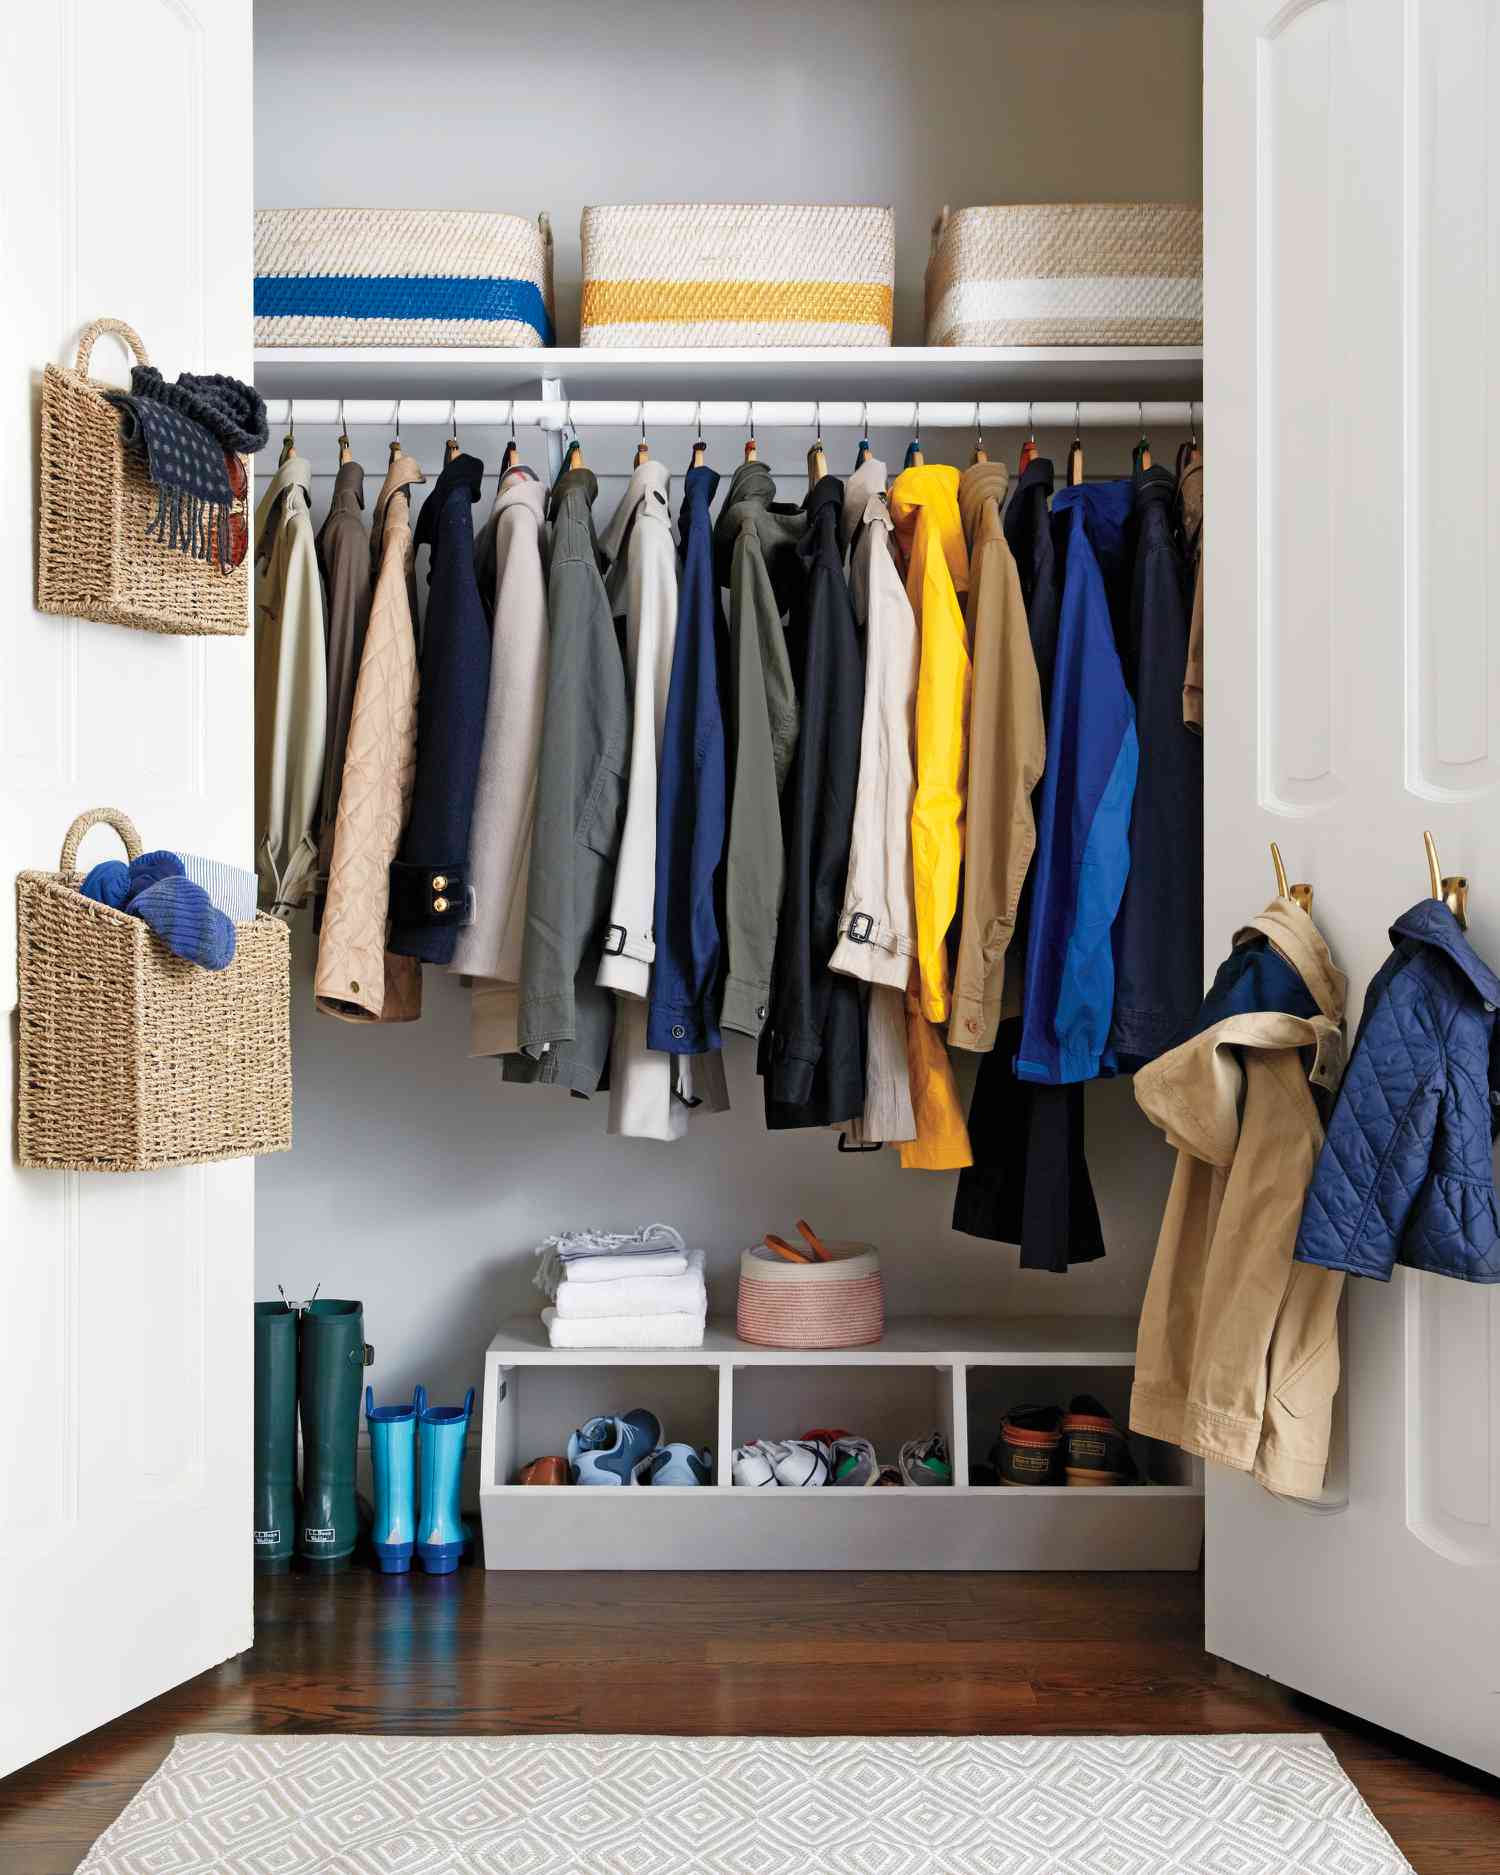 How To Organize A Deep Closet Martha, Hall Closet Shelving